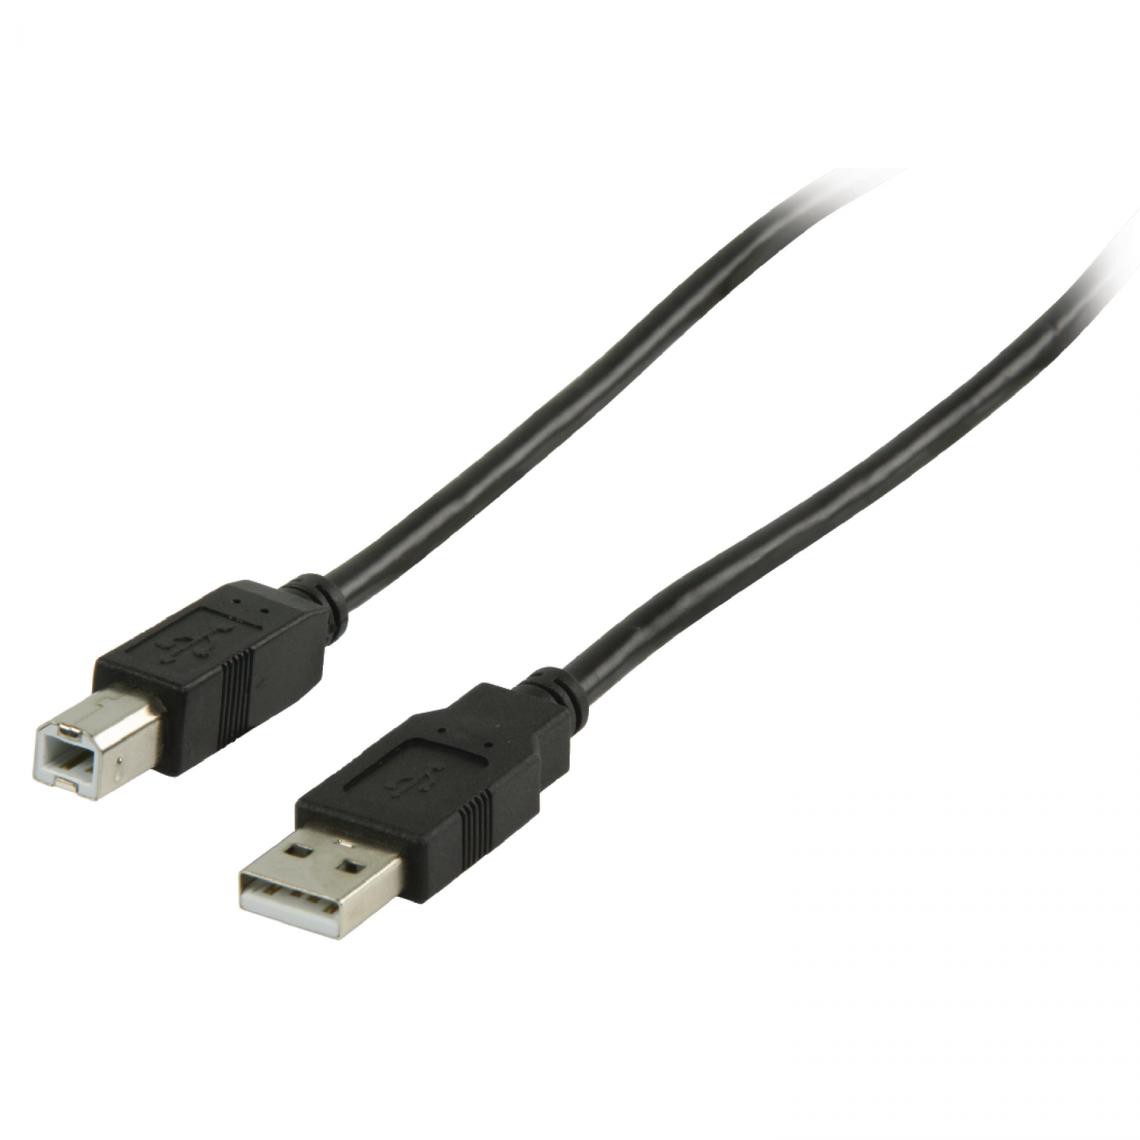 Appel - Câble de raccordement USB 2.0 Câble pour scanner, imprimante, type A à B mâle, 5.00 m - Câble antenne